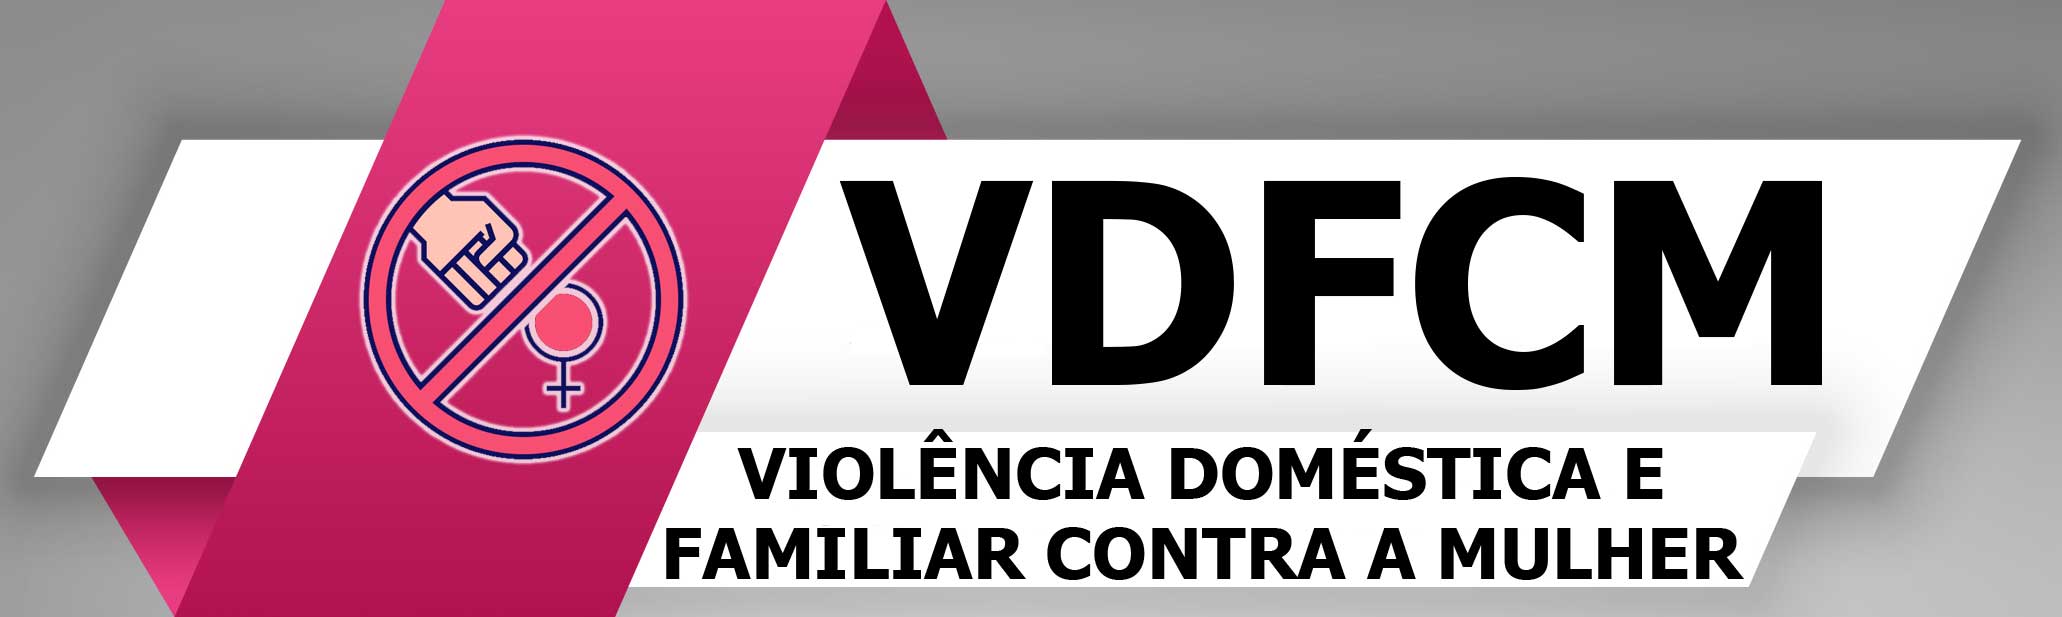 Botão-VDFCM.jpg